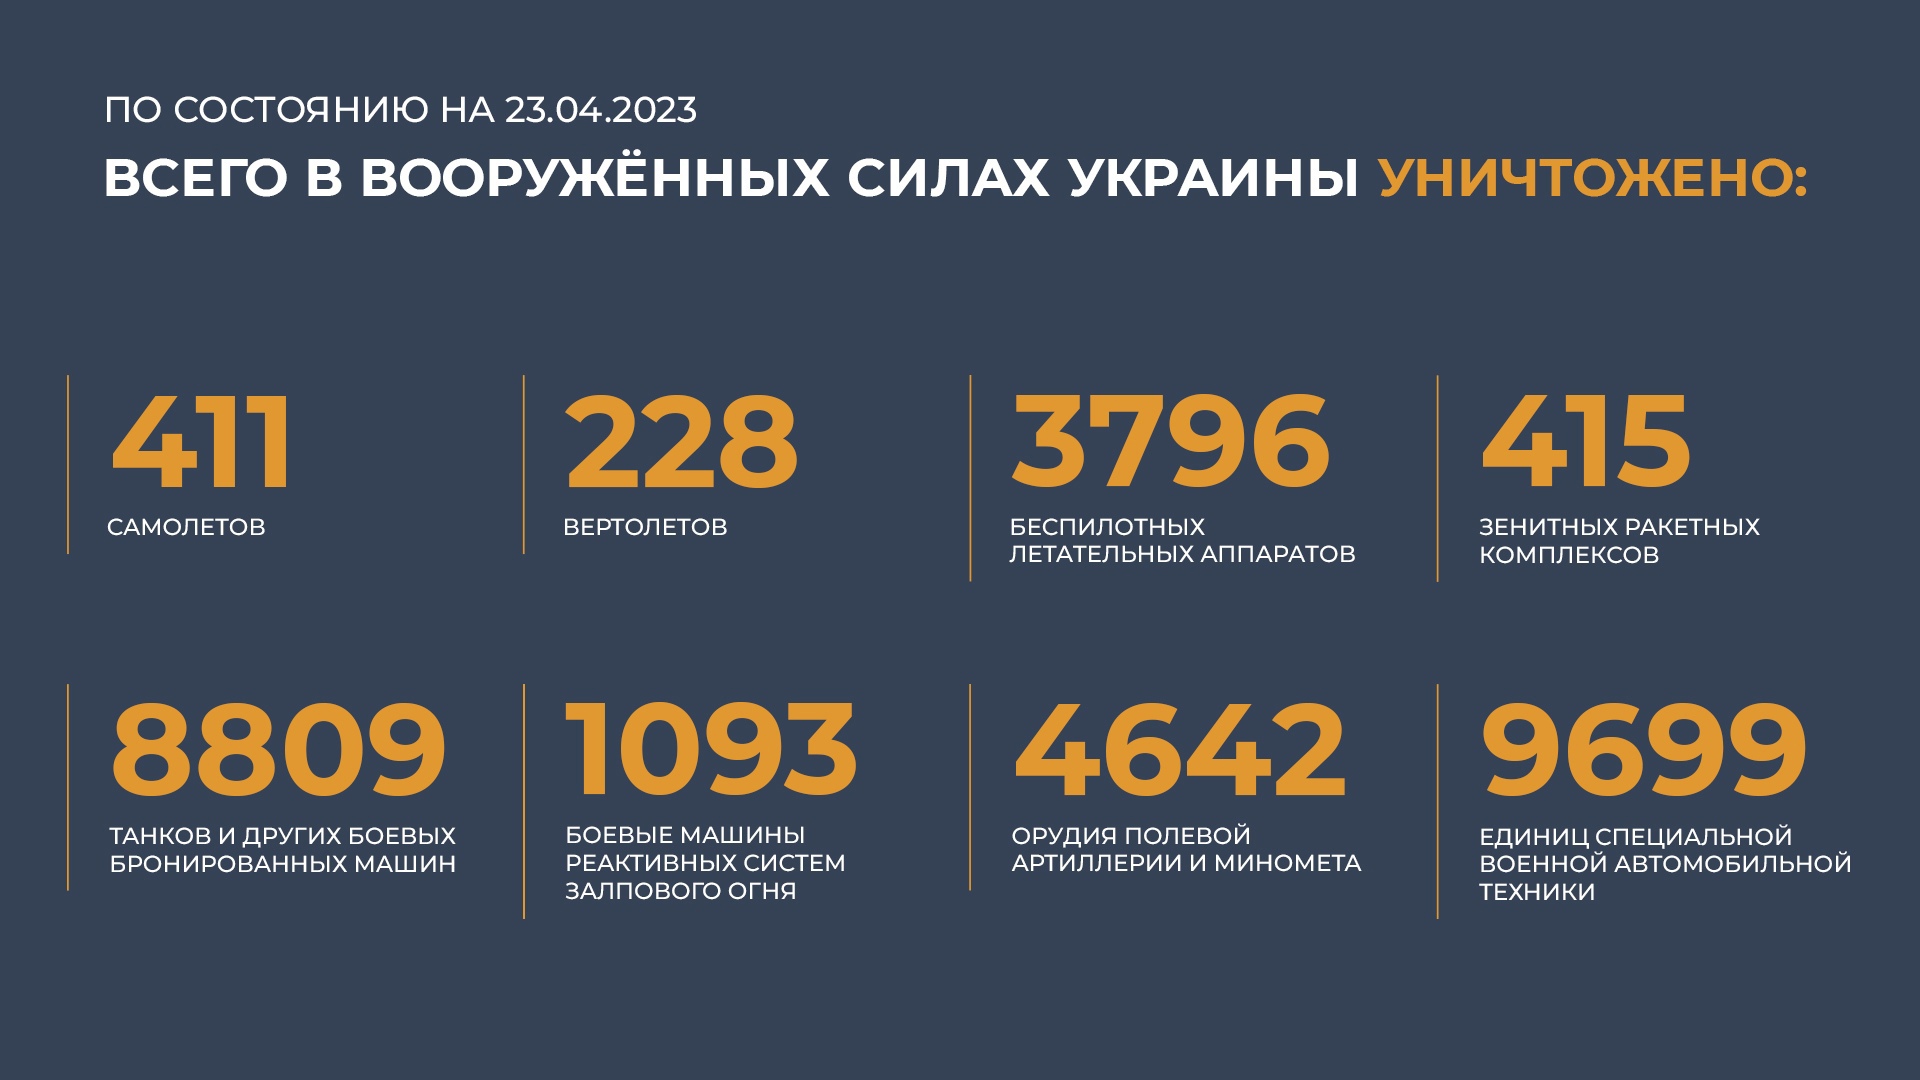 5 15 2023. Потери Украины 2023. Потери России в сво 2023. Сводка потерь ВСУ на сегодня. Потери ВСУ на сегодня 2023 года.